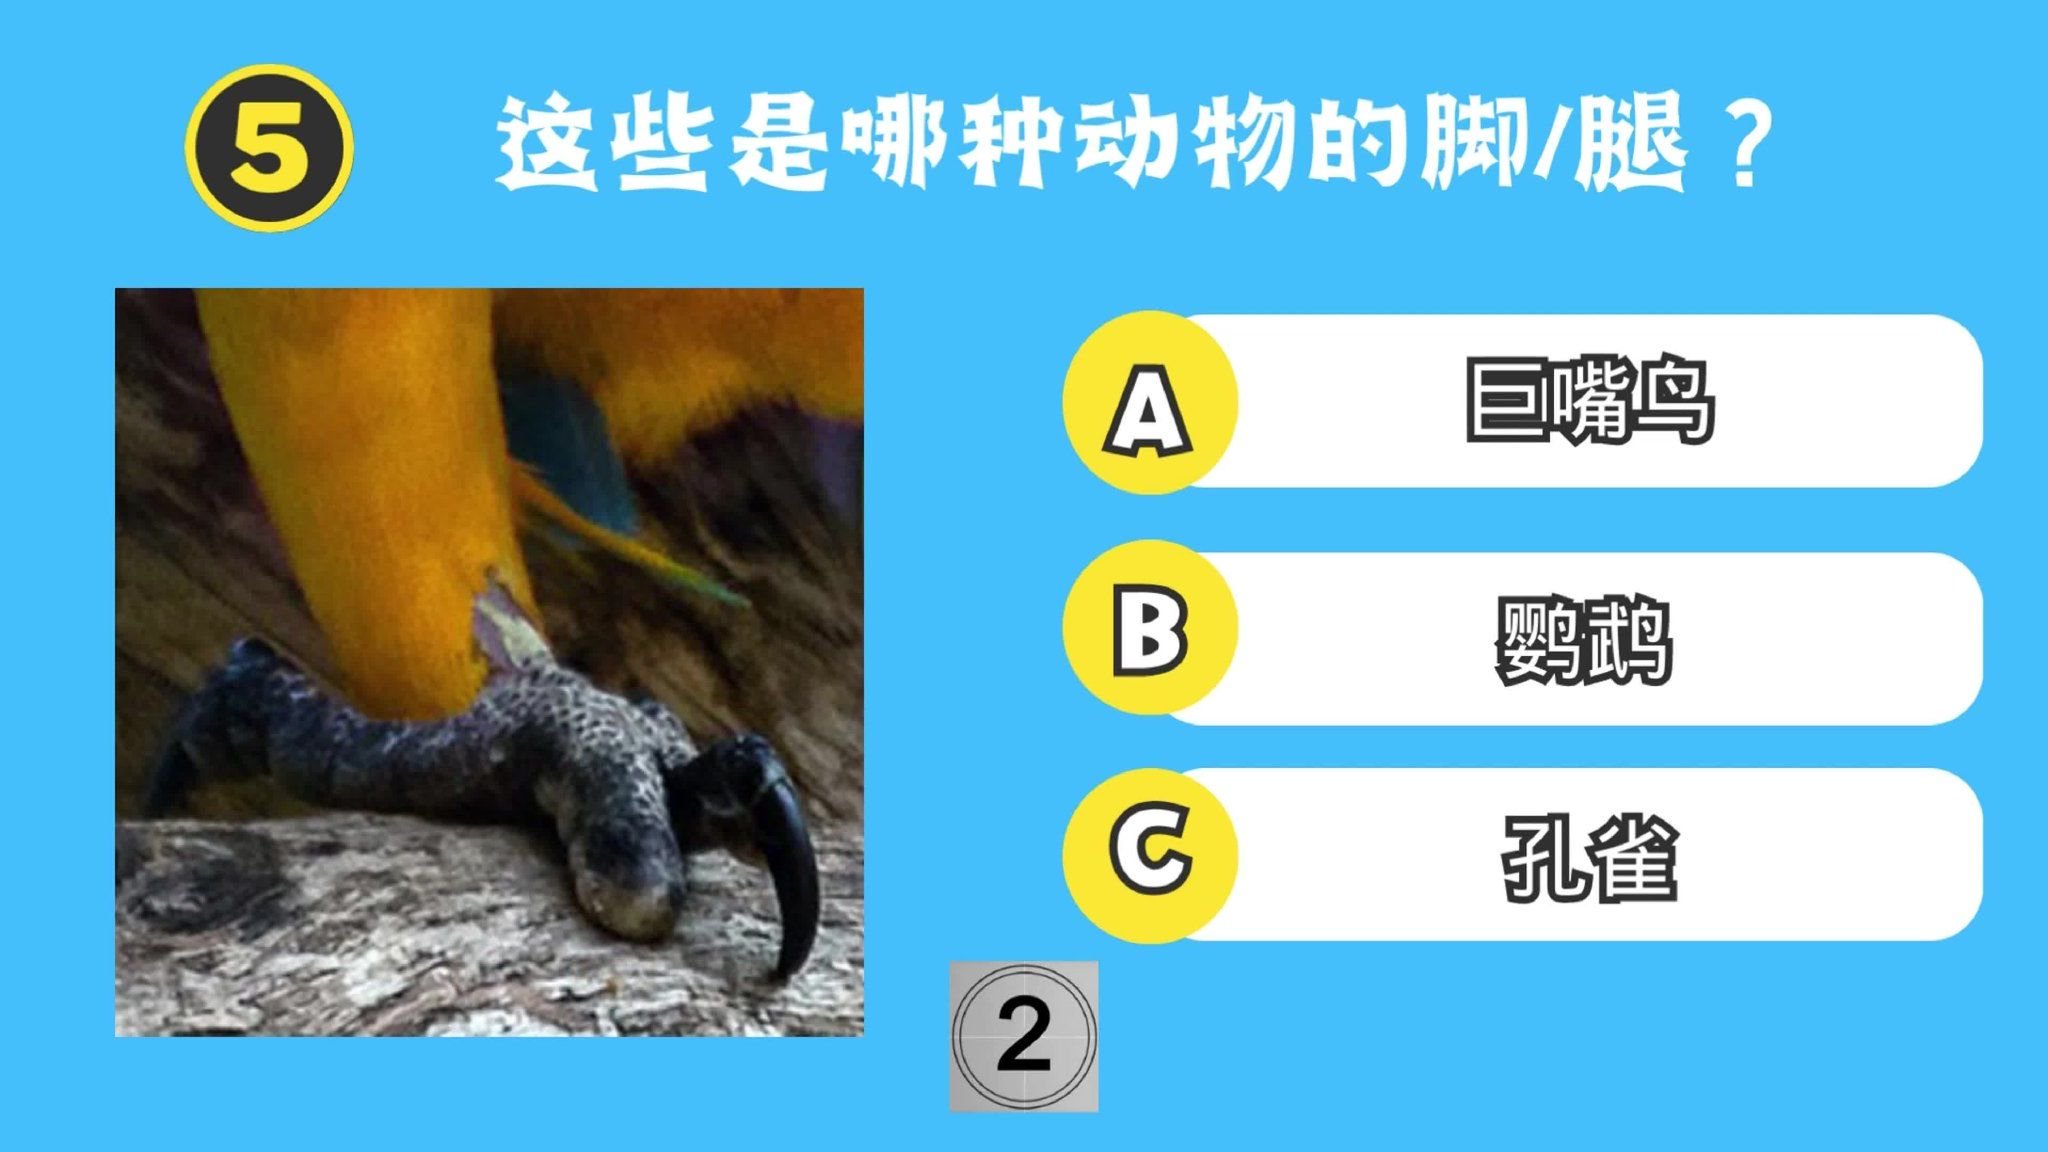 动物测验：这些是哪种动物的脚/腿？